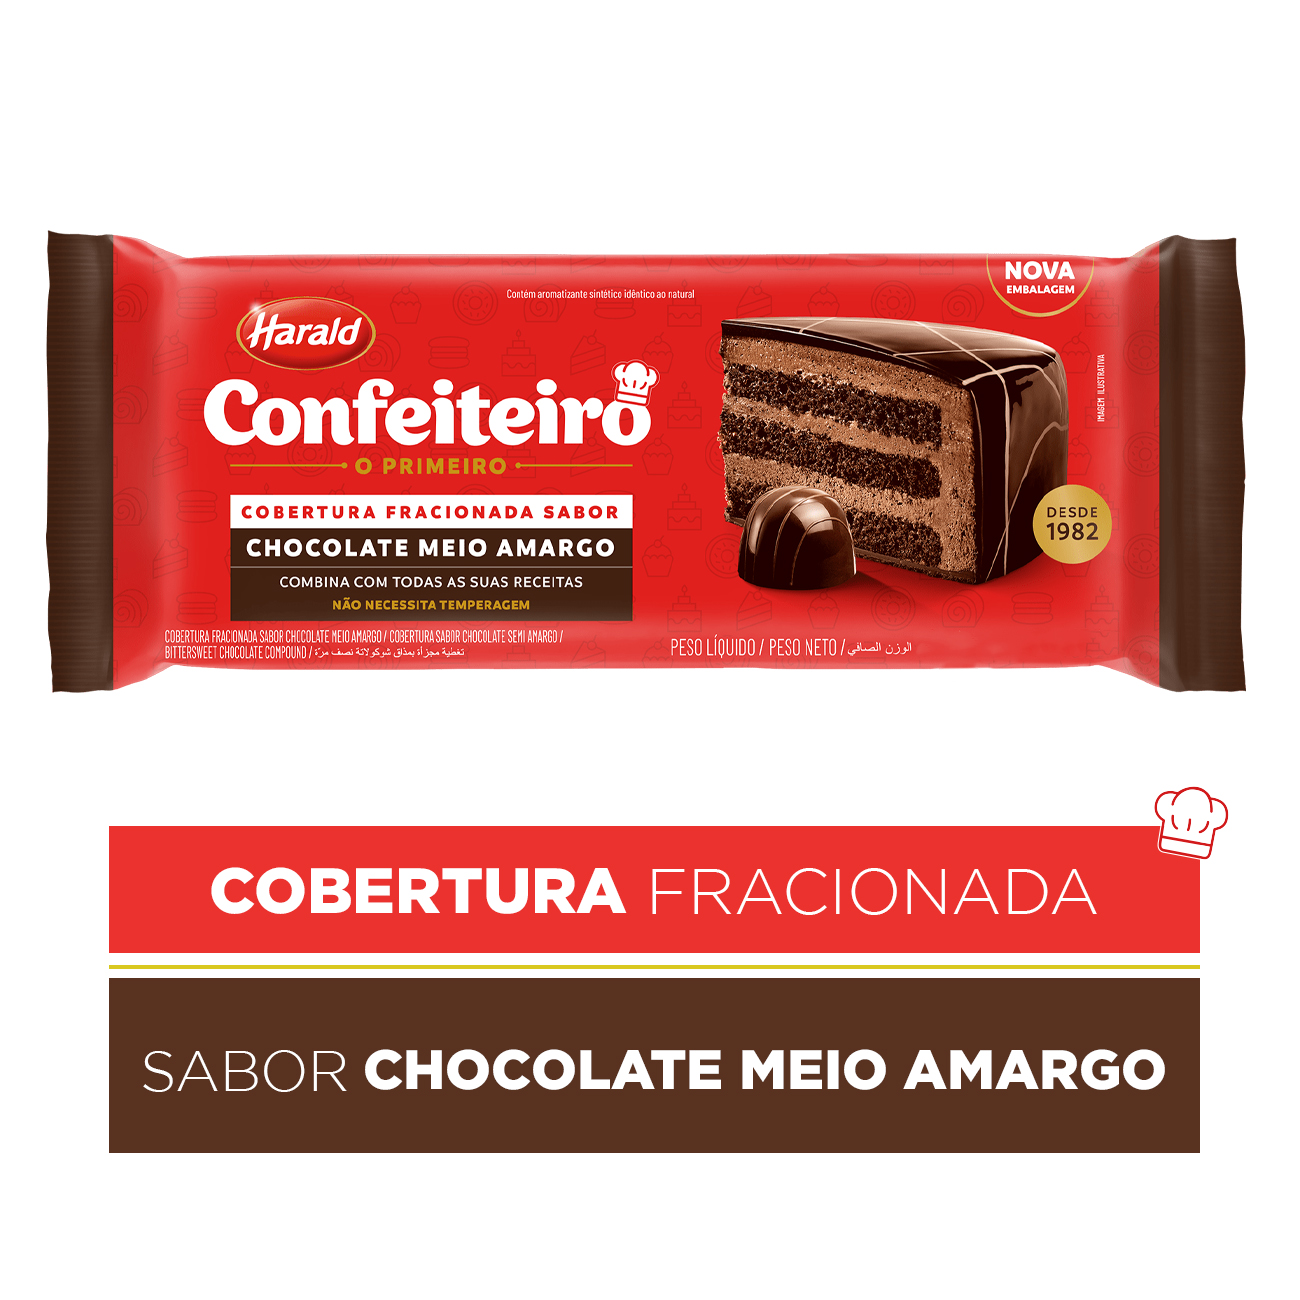 Cobertura de Chocolate em Barra Harald Confeiteiro Fracionada Meio Amargo 2,1kg